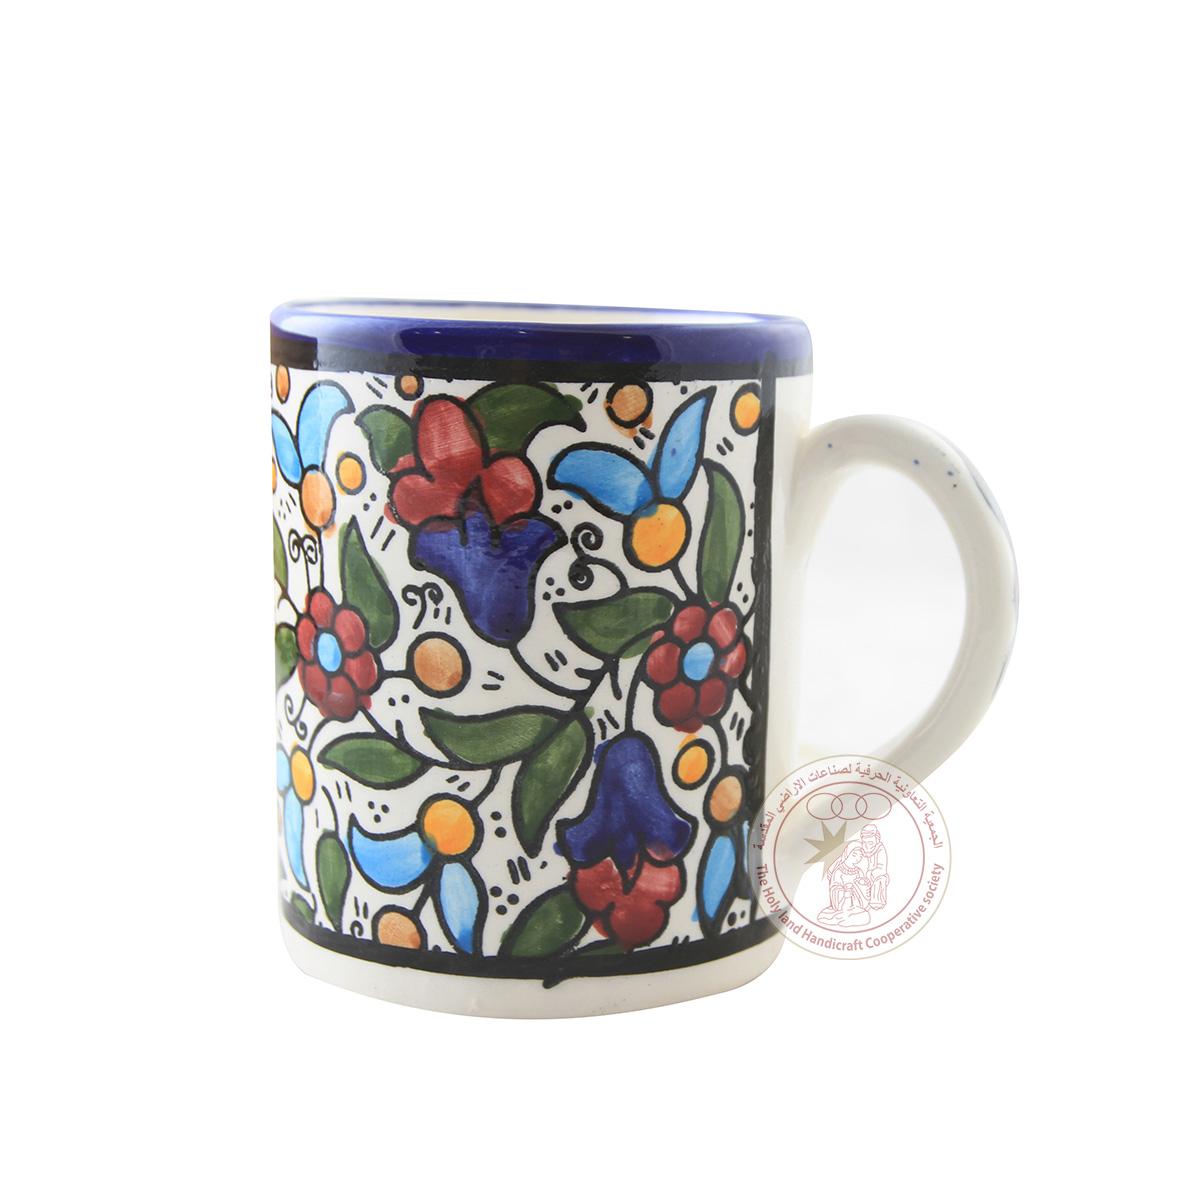 Multi-Colored Tulips' Mug  - 10 CM, Ceramic